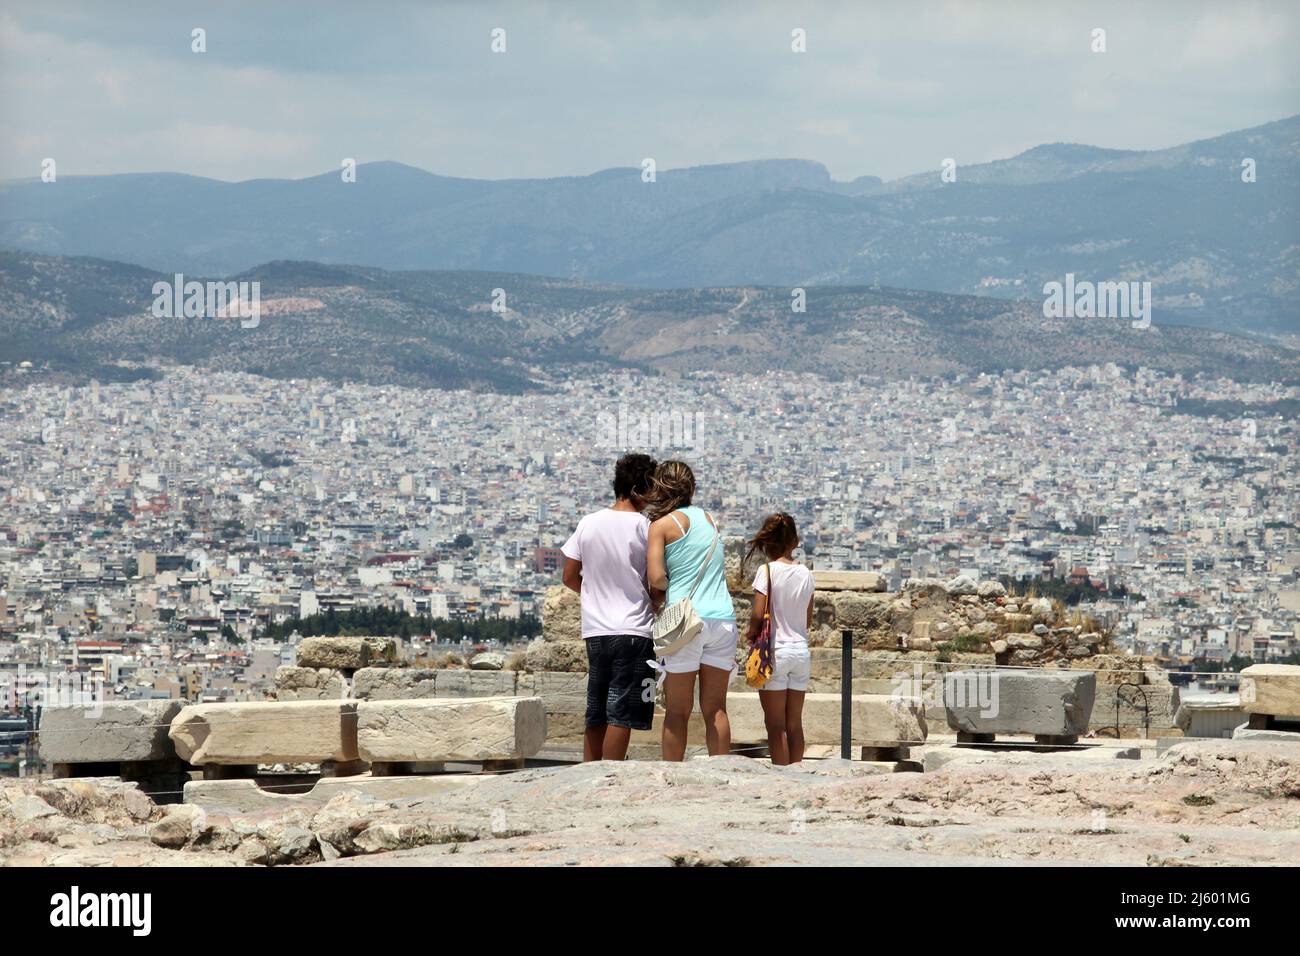 La famiglia guarda la vista di Atene dall'Acropoli. Atene è una delle città più antiche del mondo. Foto Stock